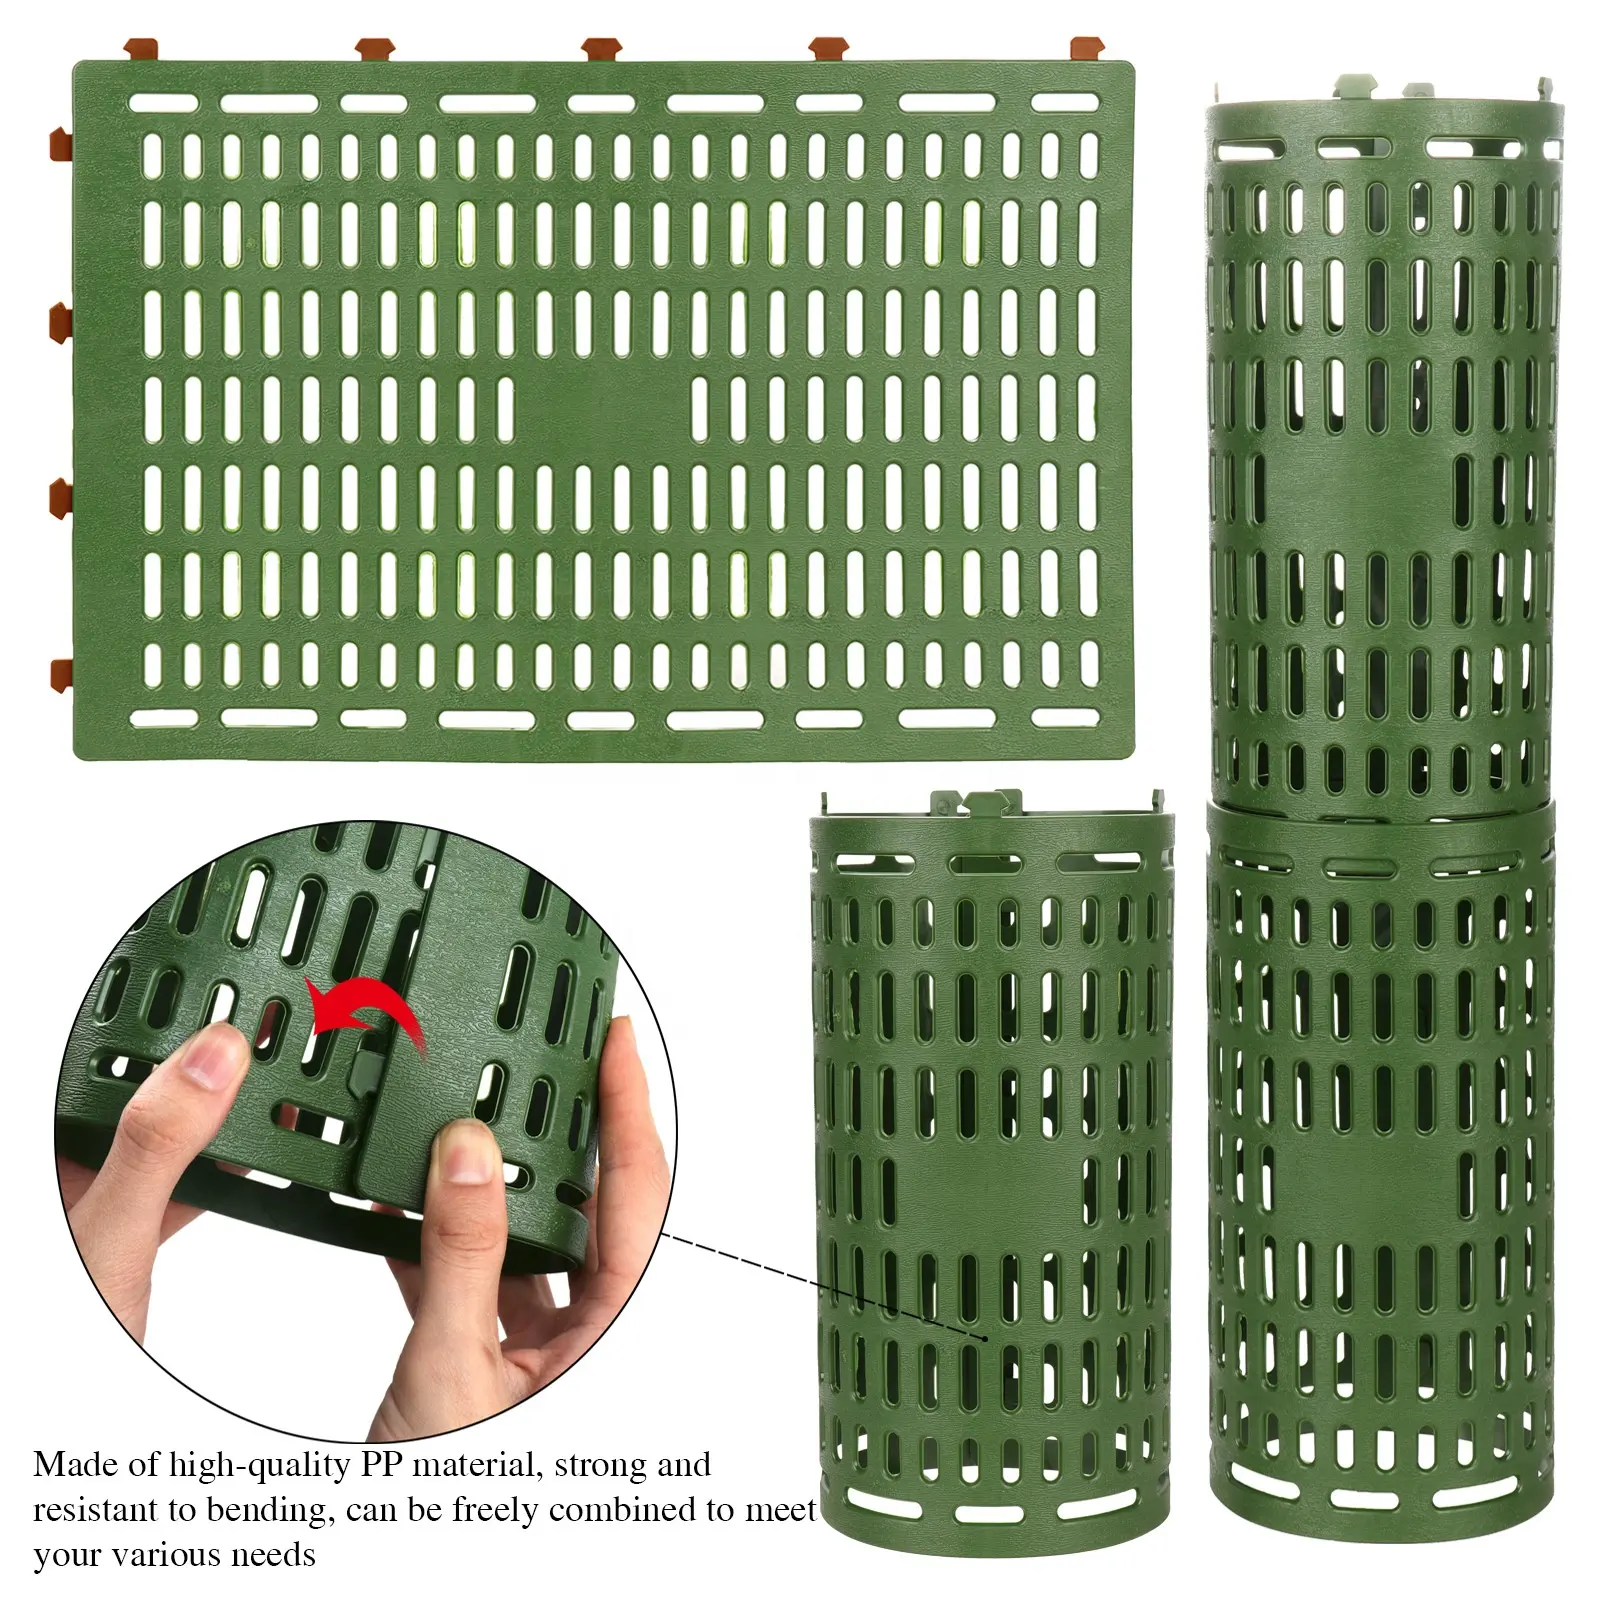 Novo Ajustável Árvore Trunk Protector pp Plástico Sapling Guard Oco Fence Guard Cover Plant Protection Tool Jardim Acessórios